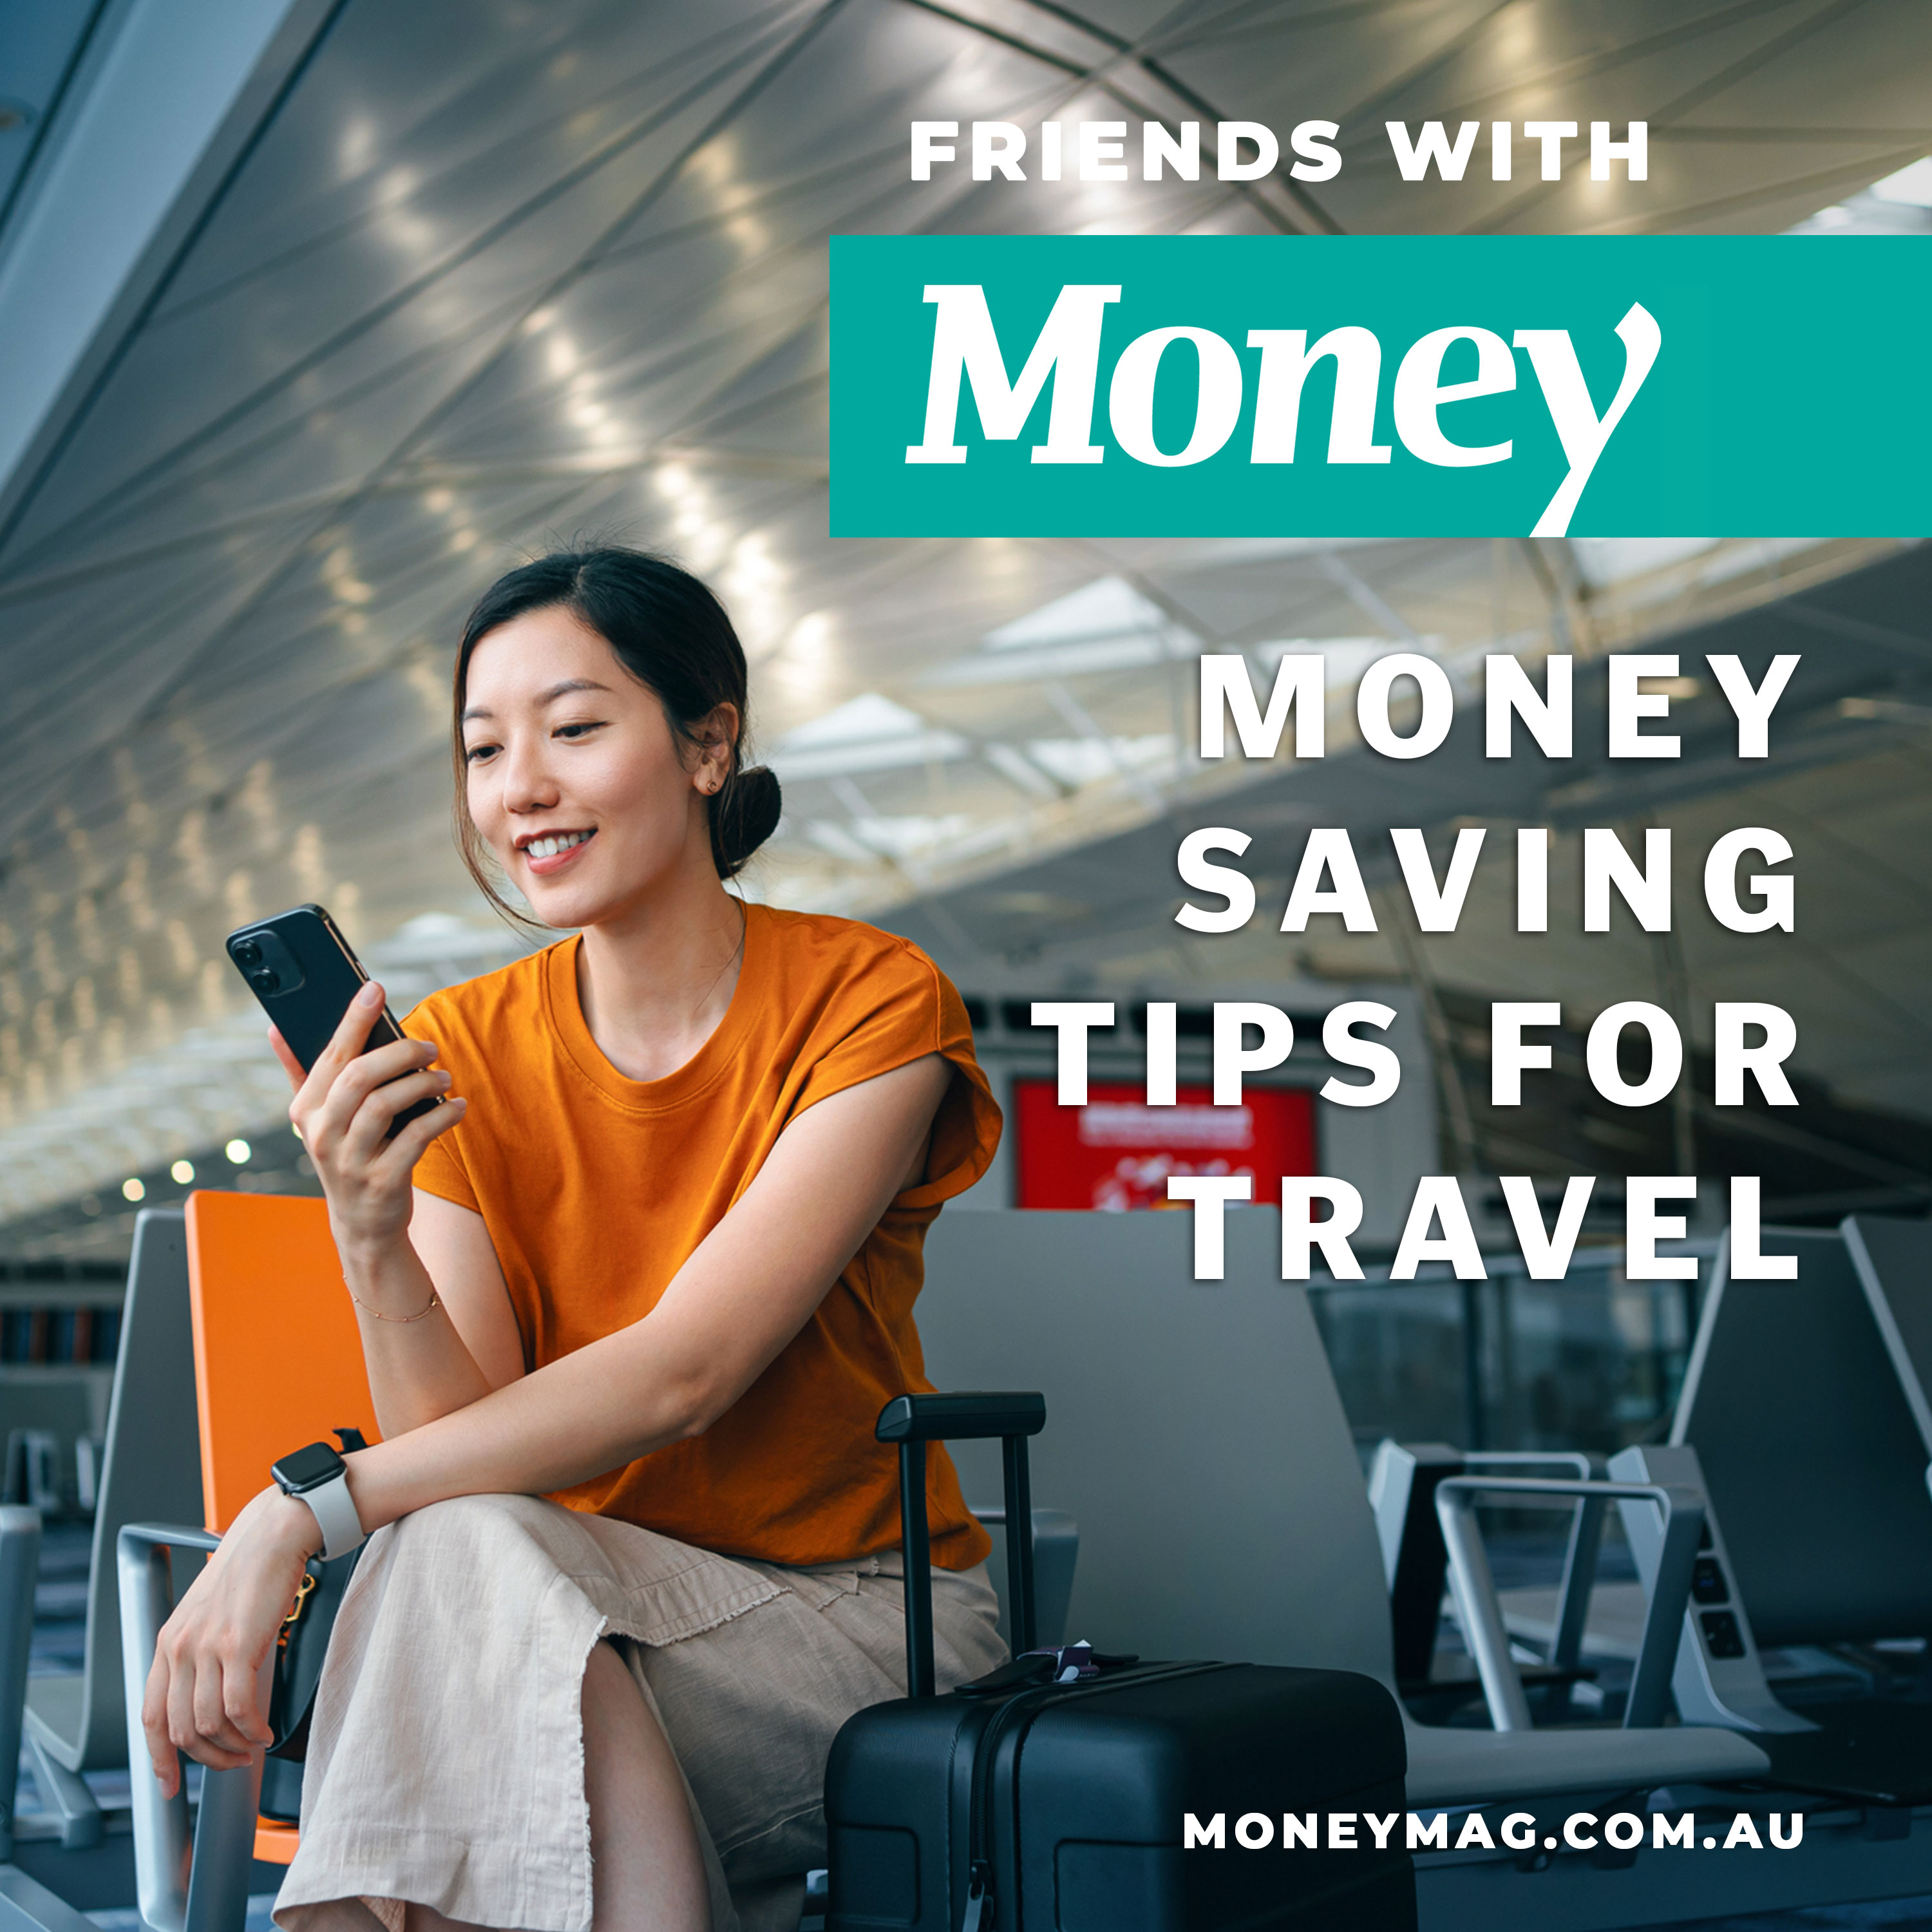 Money saving tips for travel